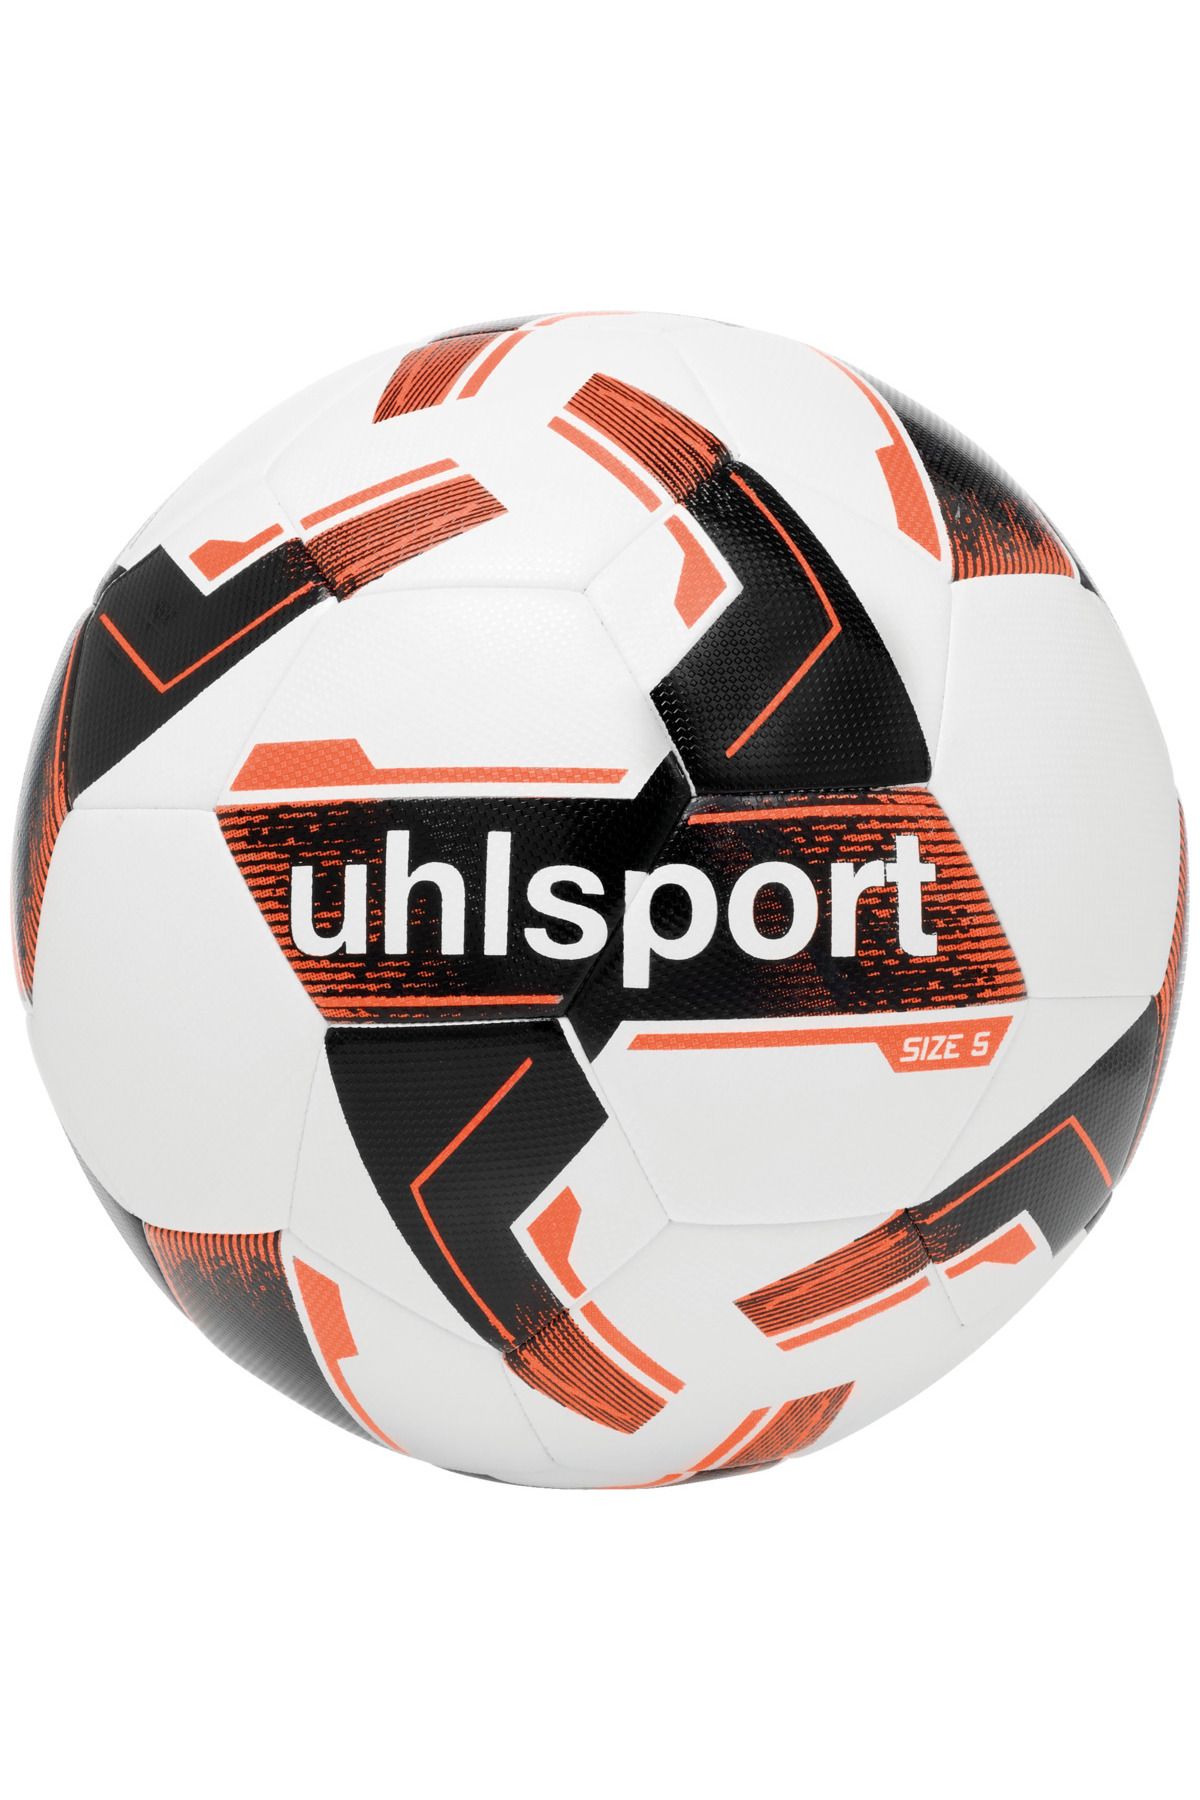 uhlsport Resist Synergy Hybrid Futbol Topu No:5